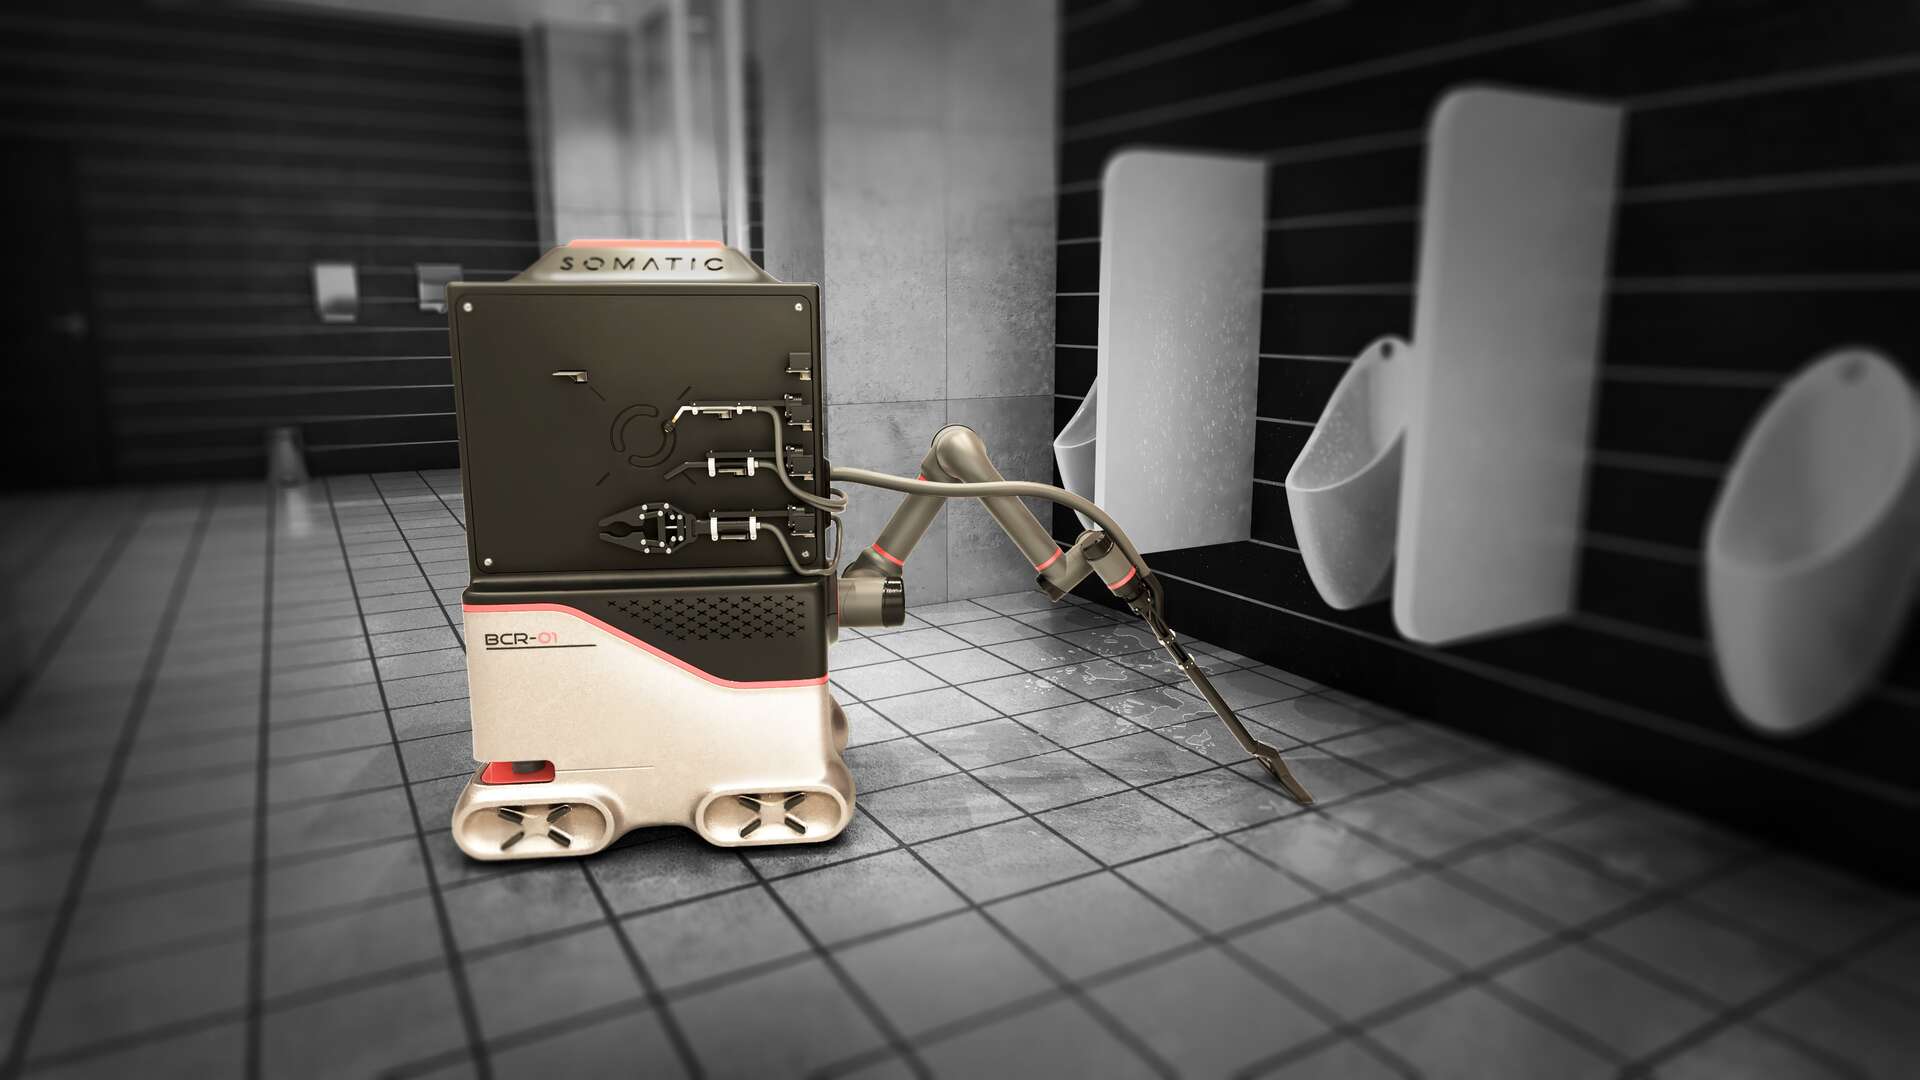 Questo robot autonomo vuole sostituire le squadre di pulizia negli uffici